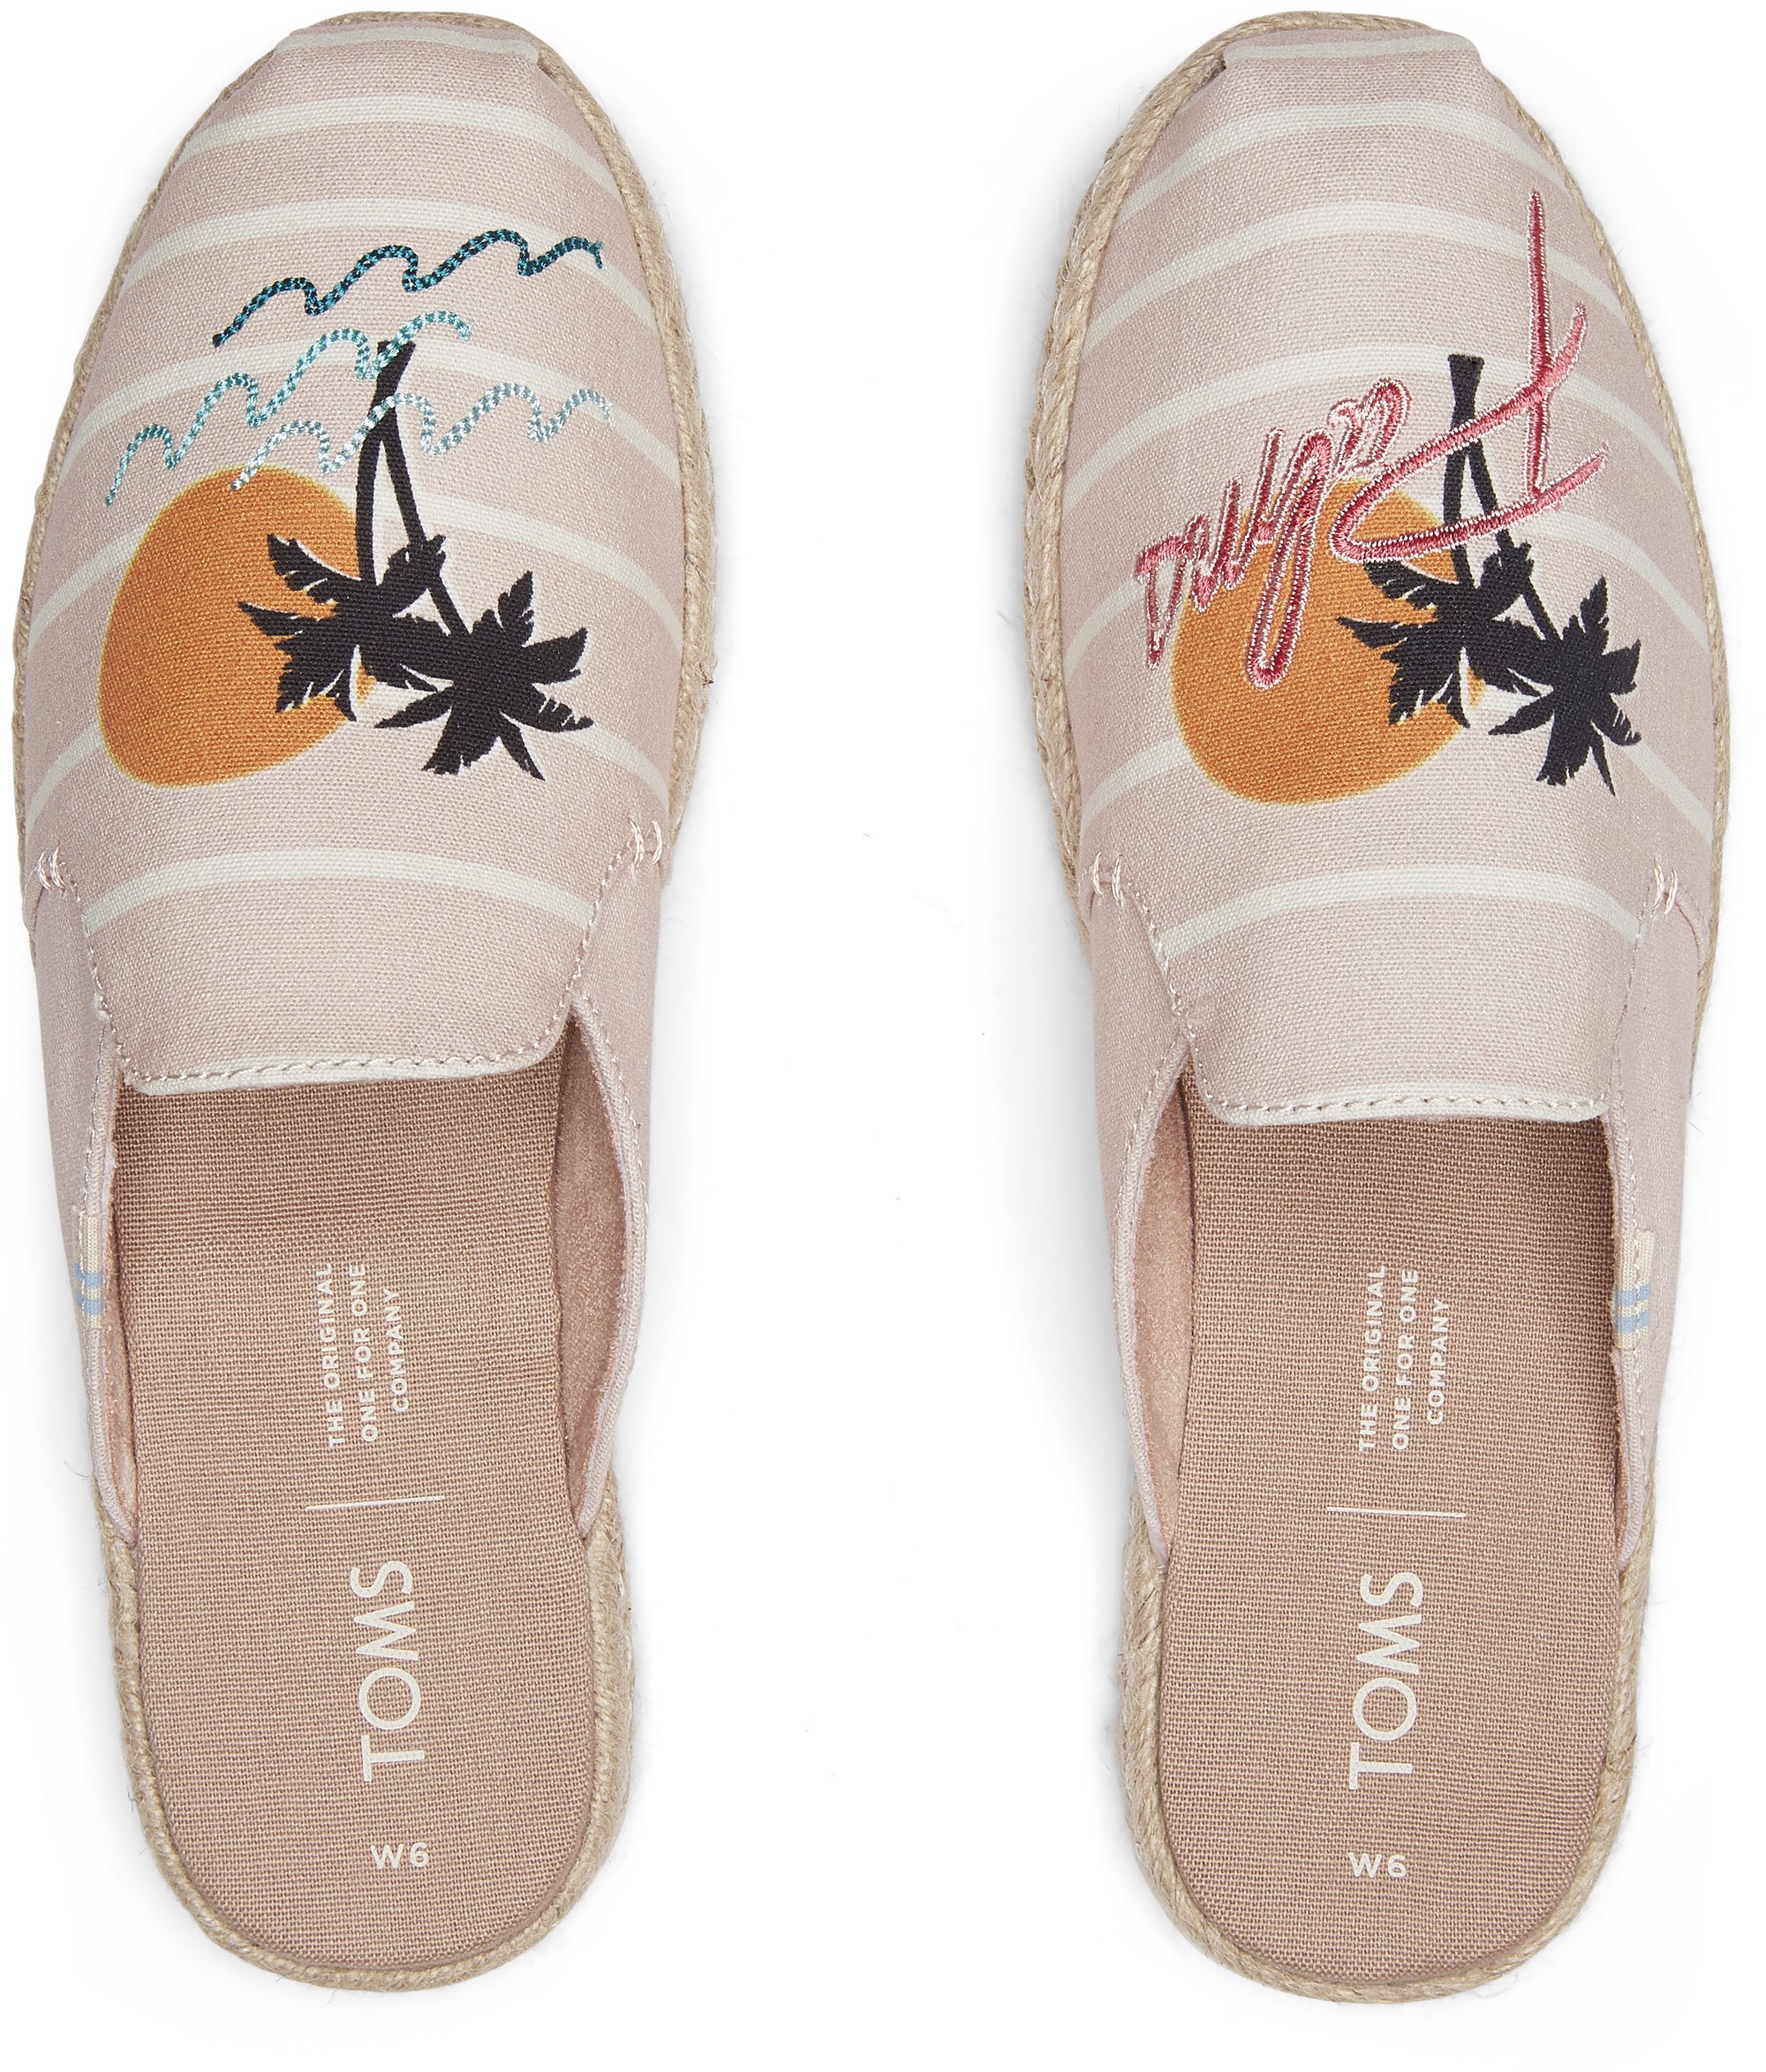 Dámské růžové pantofle s ozdobnou výšivkou TOMS Nova